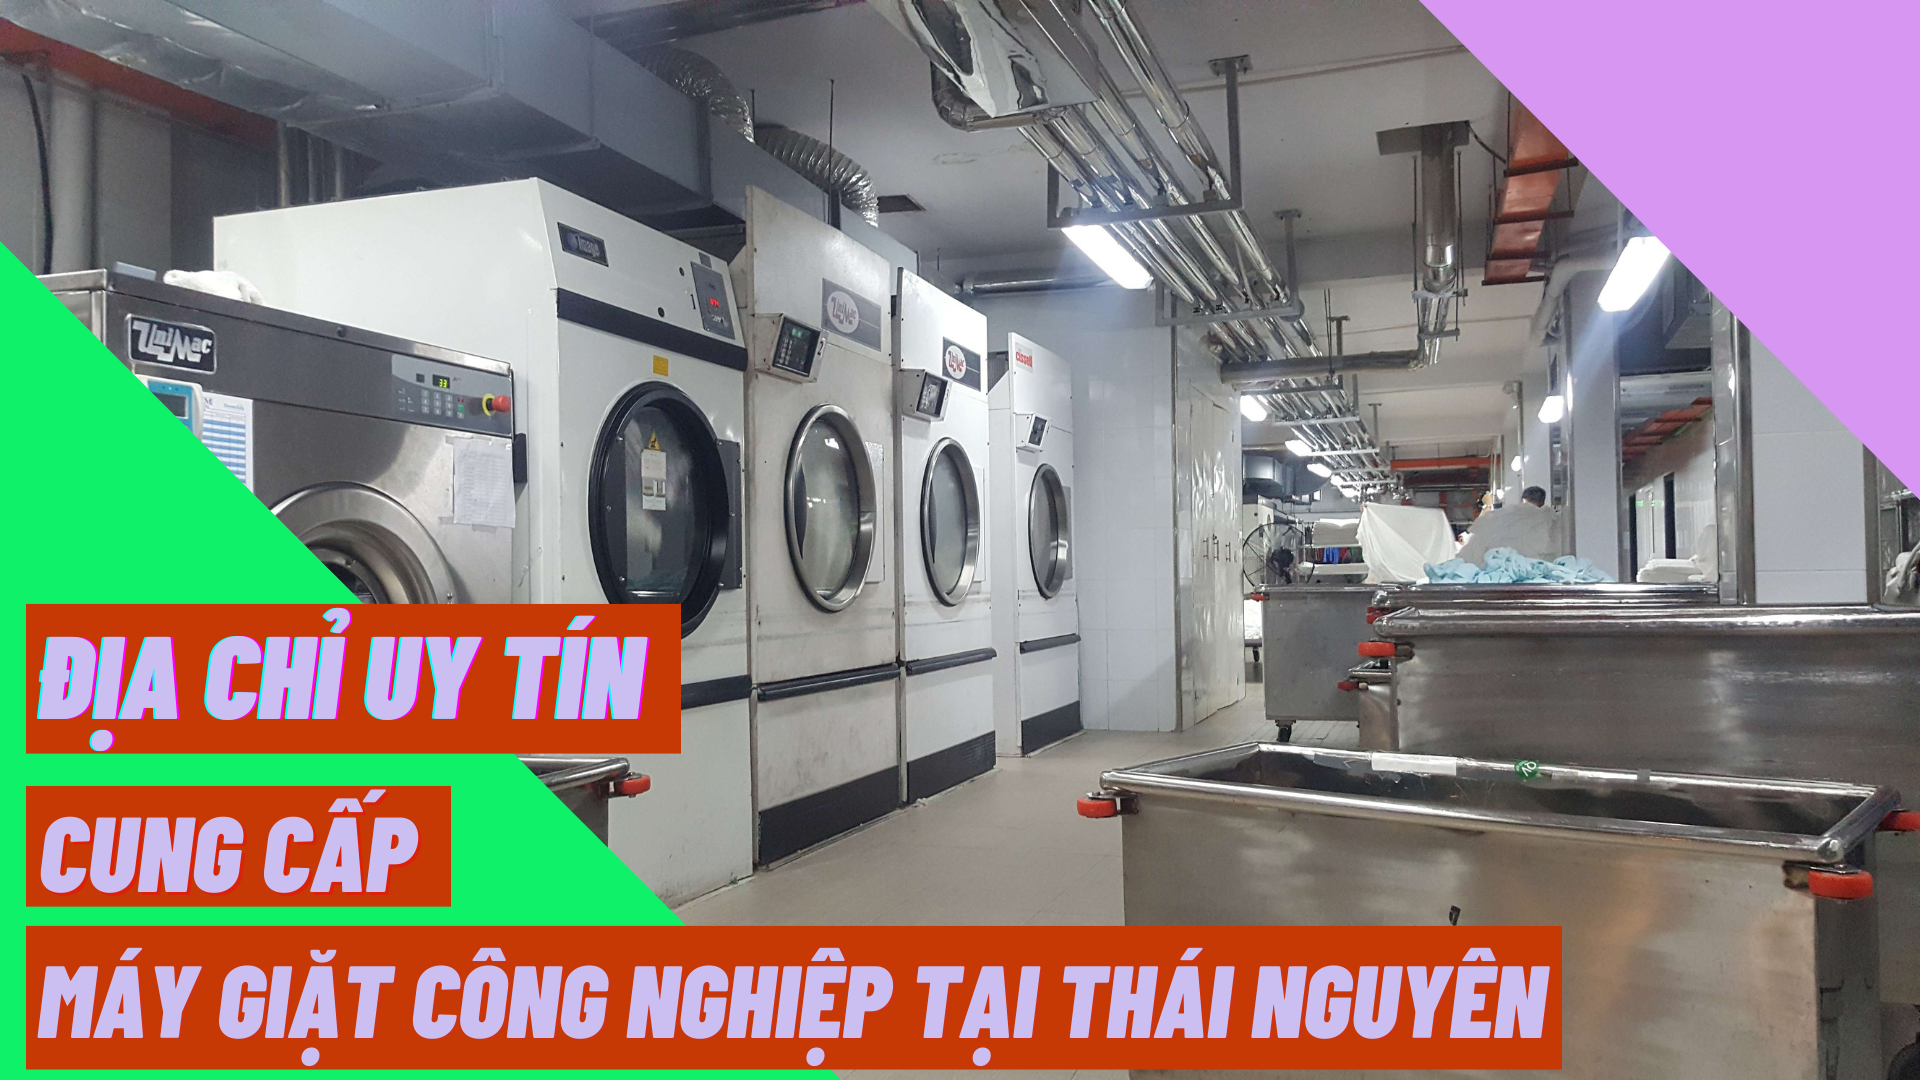 Địa chỉ uy tín cung cấp máy giặt công nghiệp tại Thái Nguyên